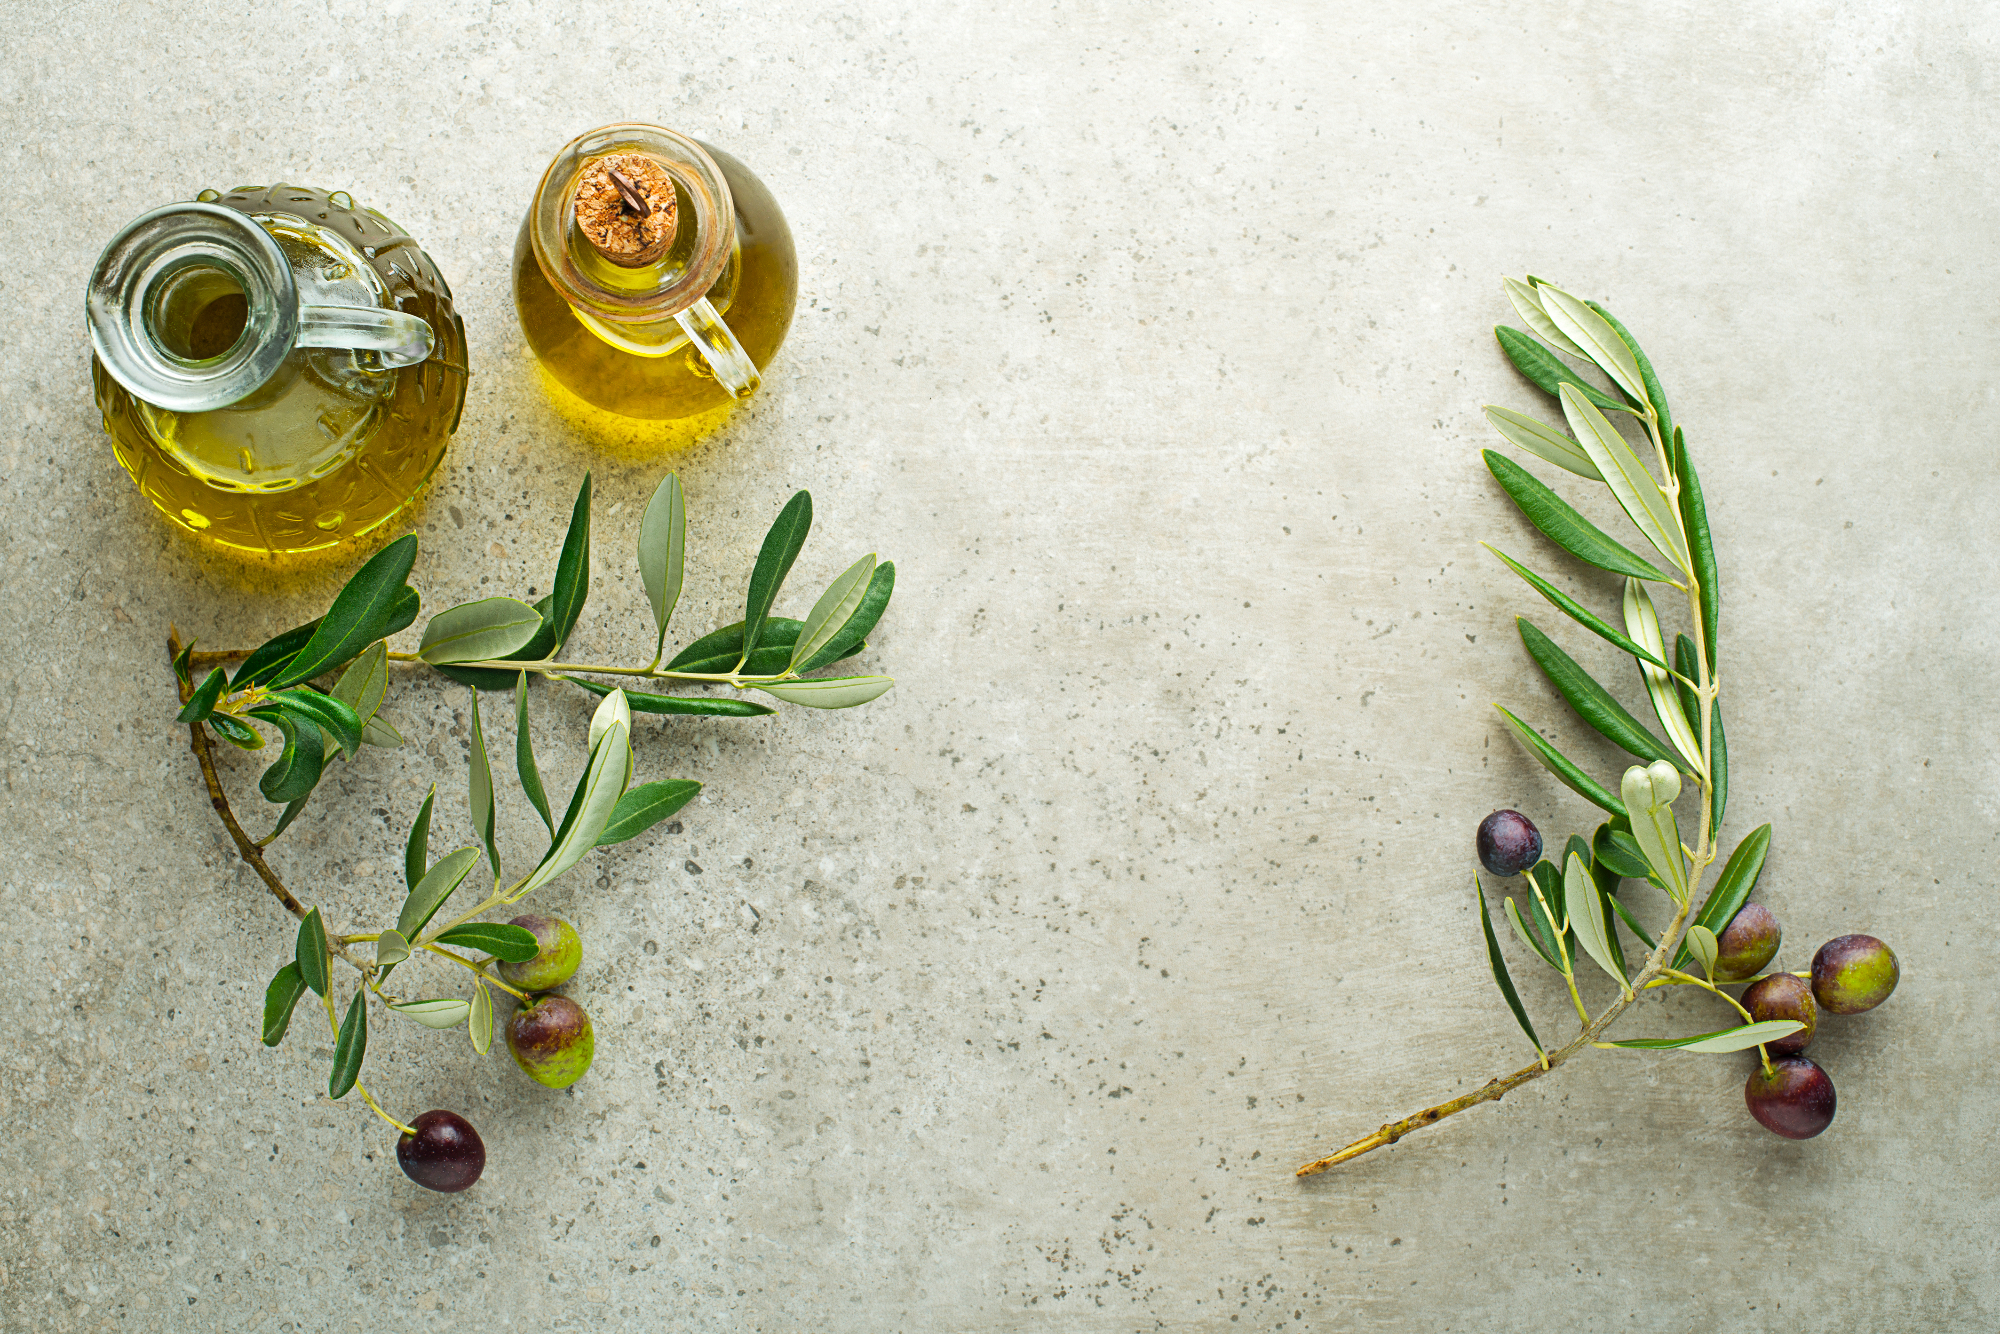 Olivno olje je eno izmed najboljših sestavin